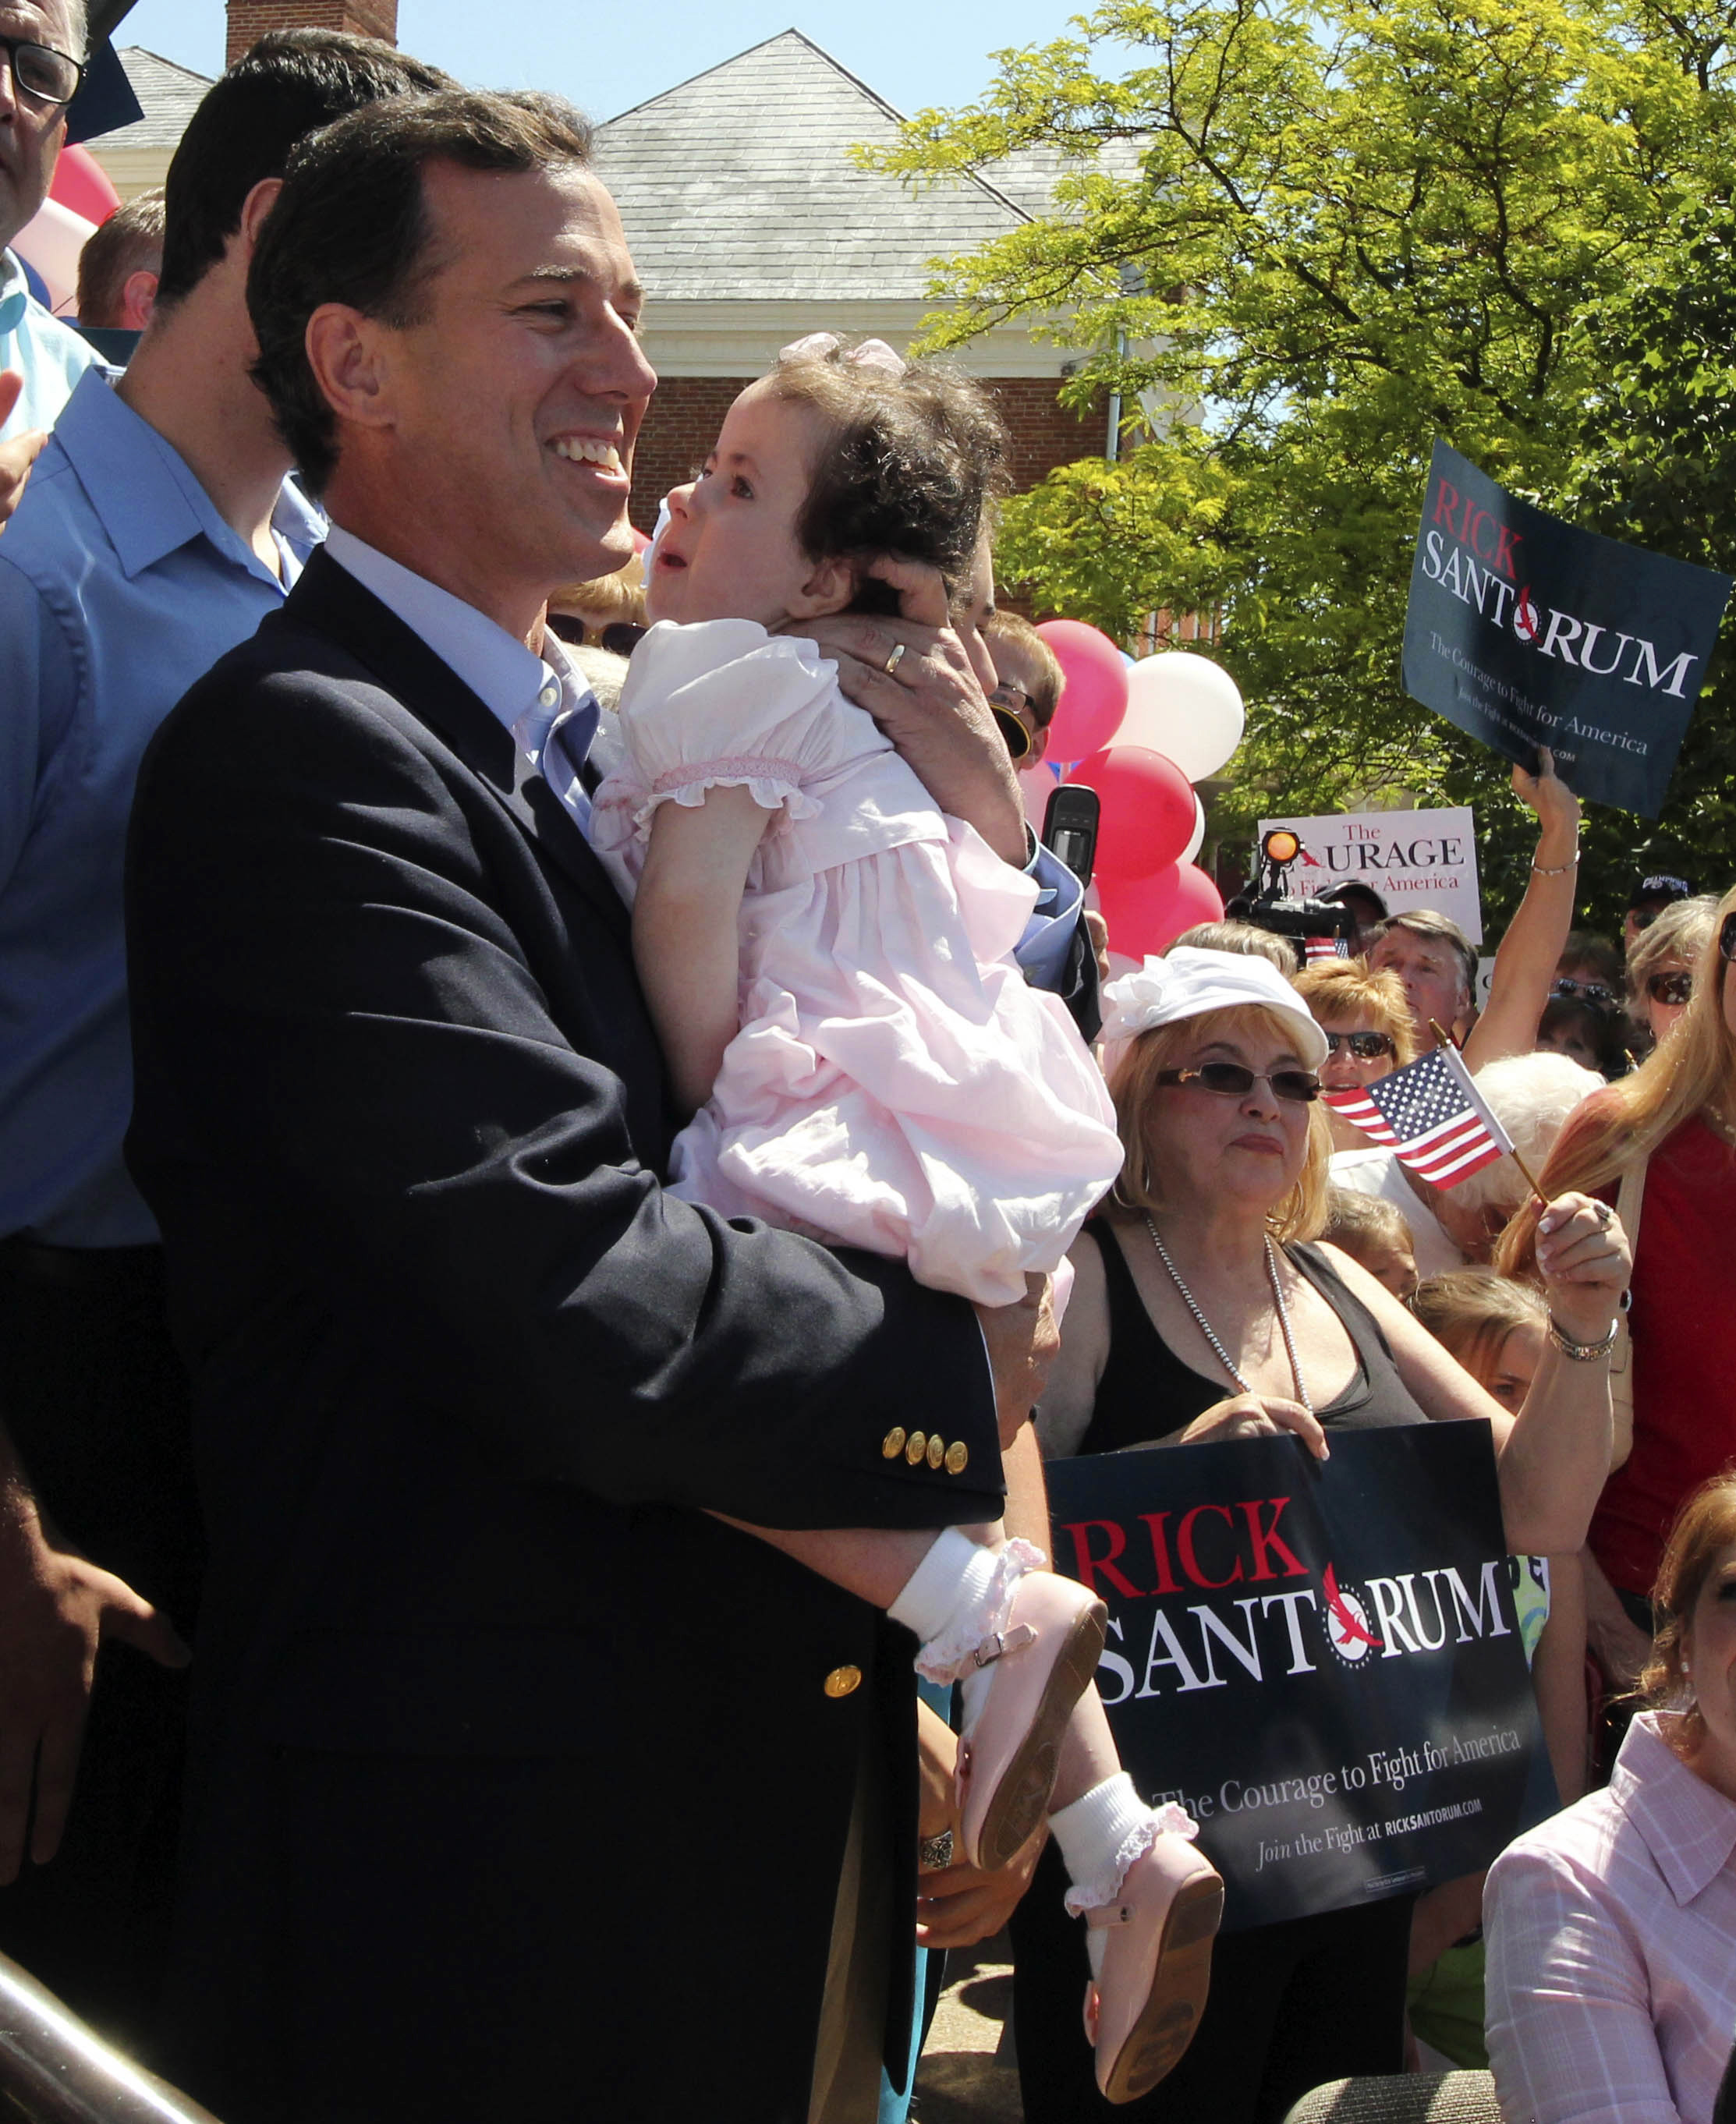 Santorum väljer att hoppa av på grund av dottern Isabellas svåra sjukdom.